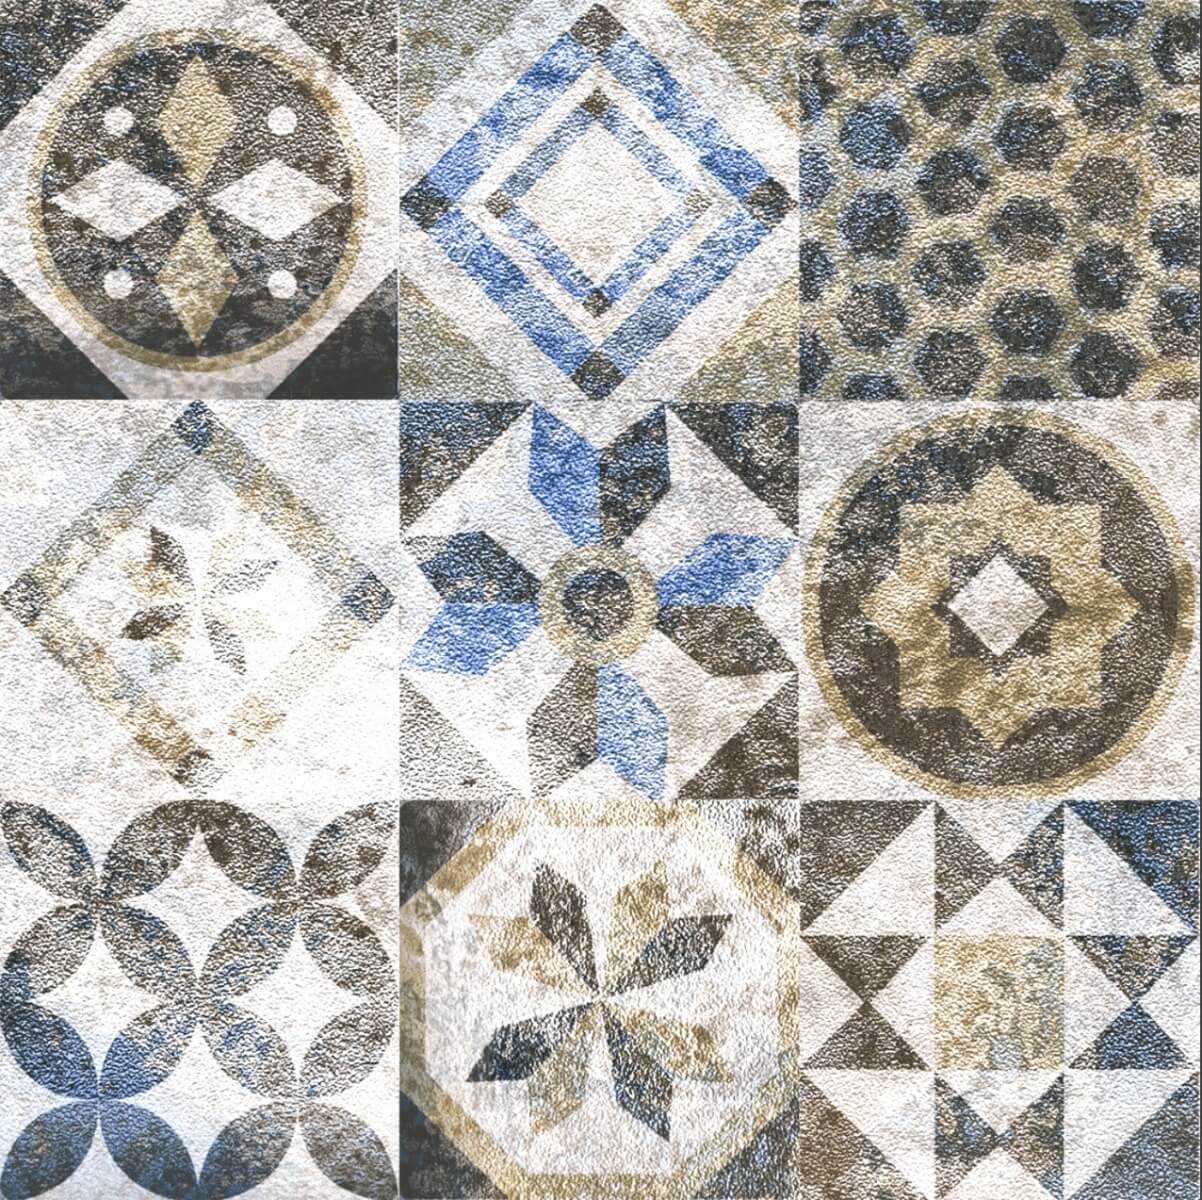 Floor Tiles for false